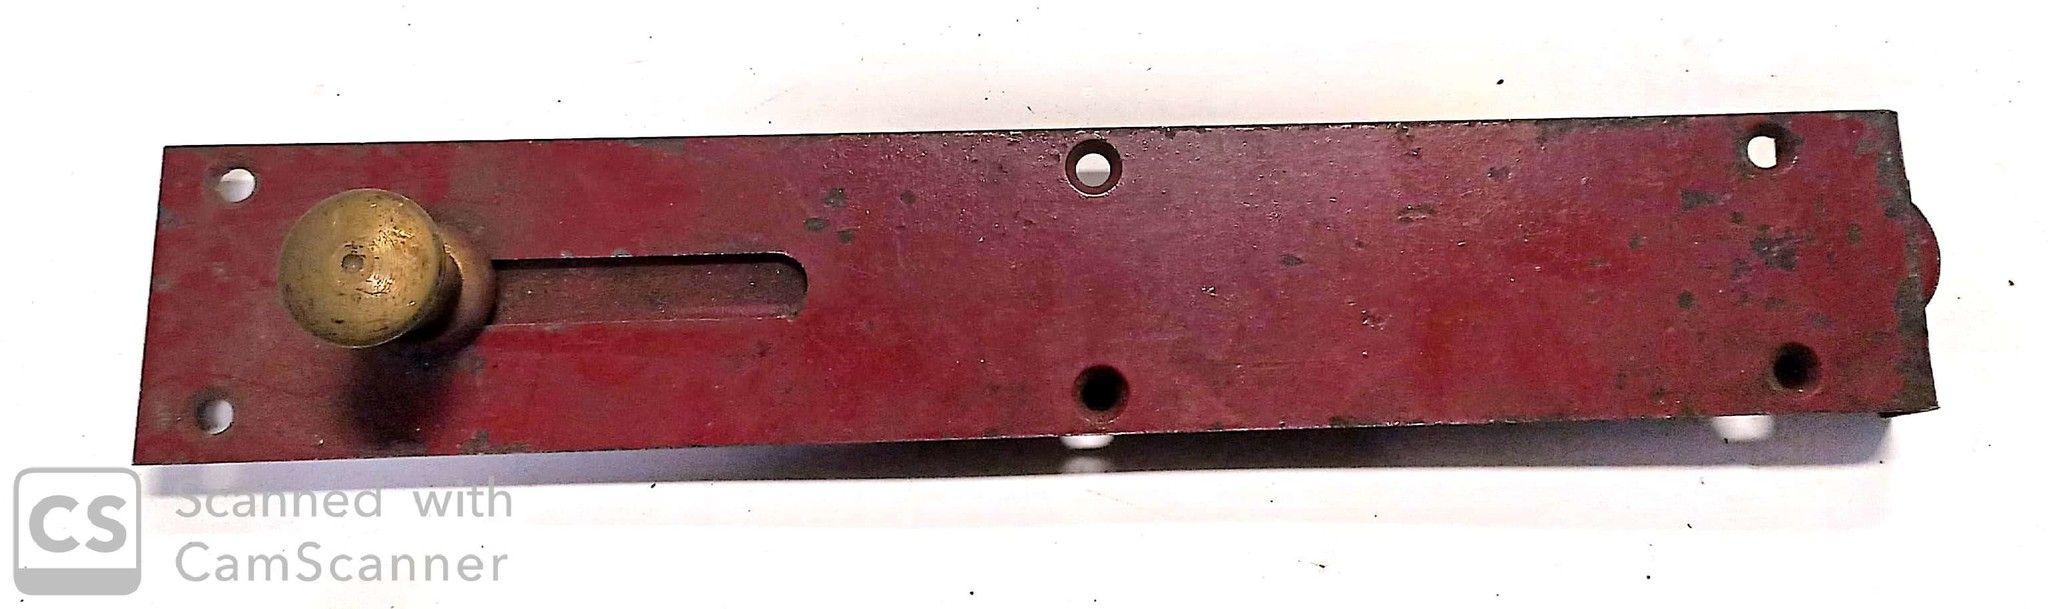 Catenaccio sottolama cm 25 tipo pesante in ferro verniciato